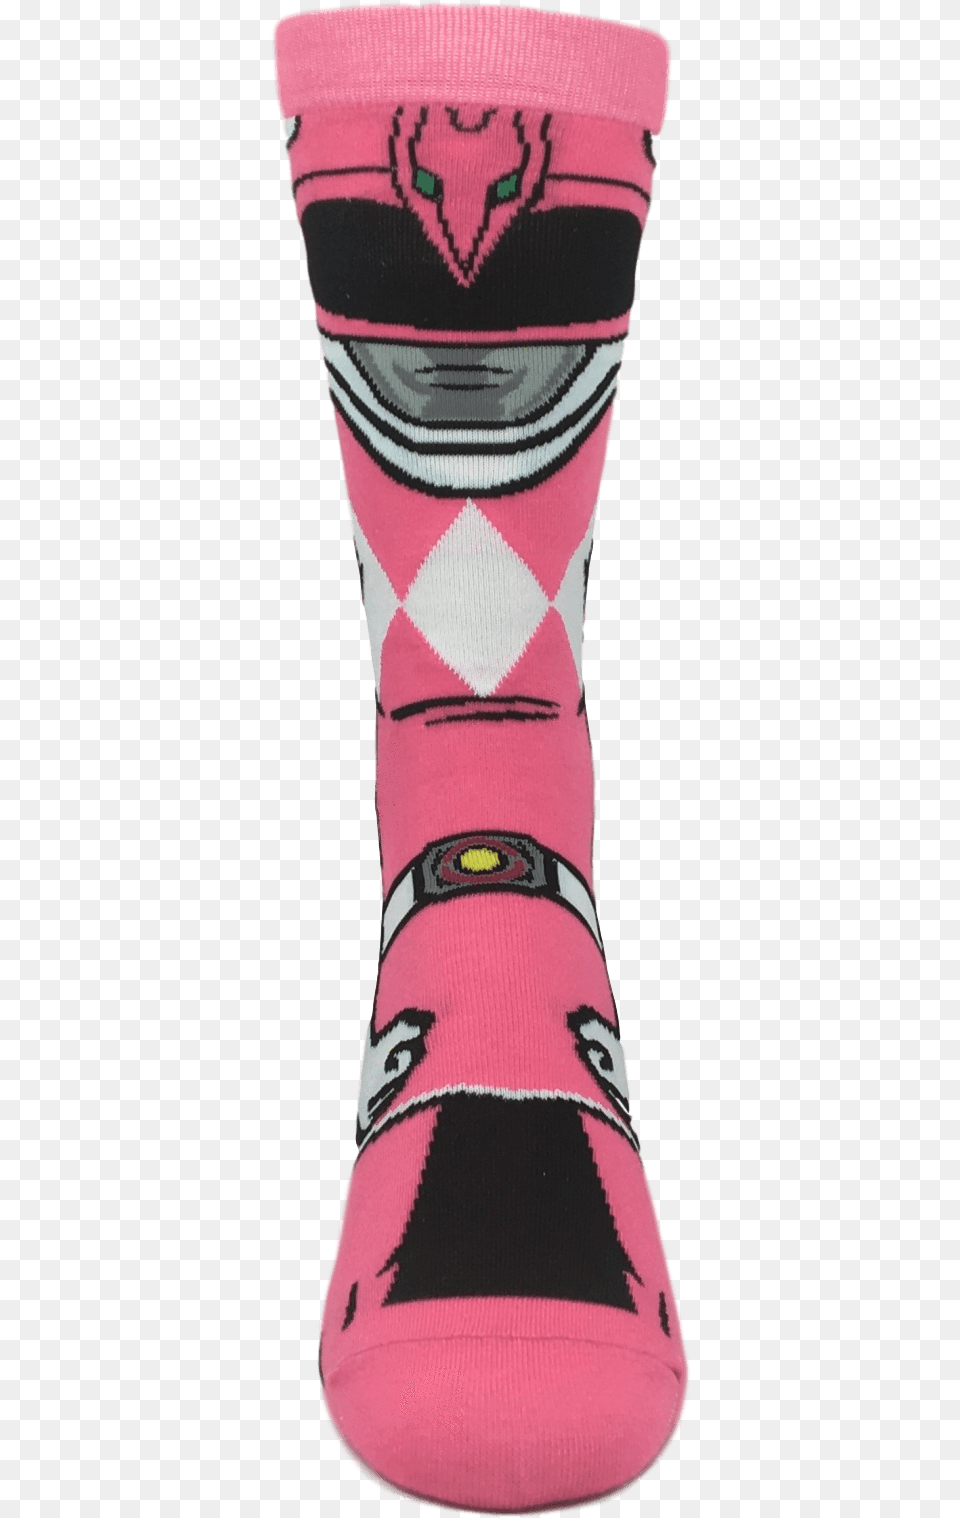 Power Rangers Pink Ranger 360 Socksclass Sock, Clothing, Hosiery, Footwear, Shoe Free Png Download